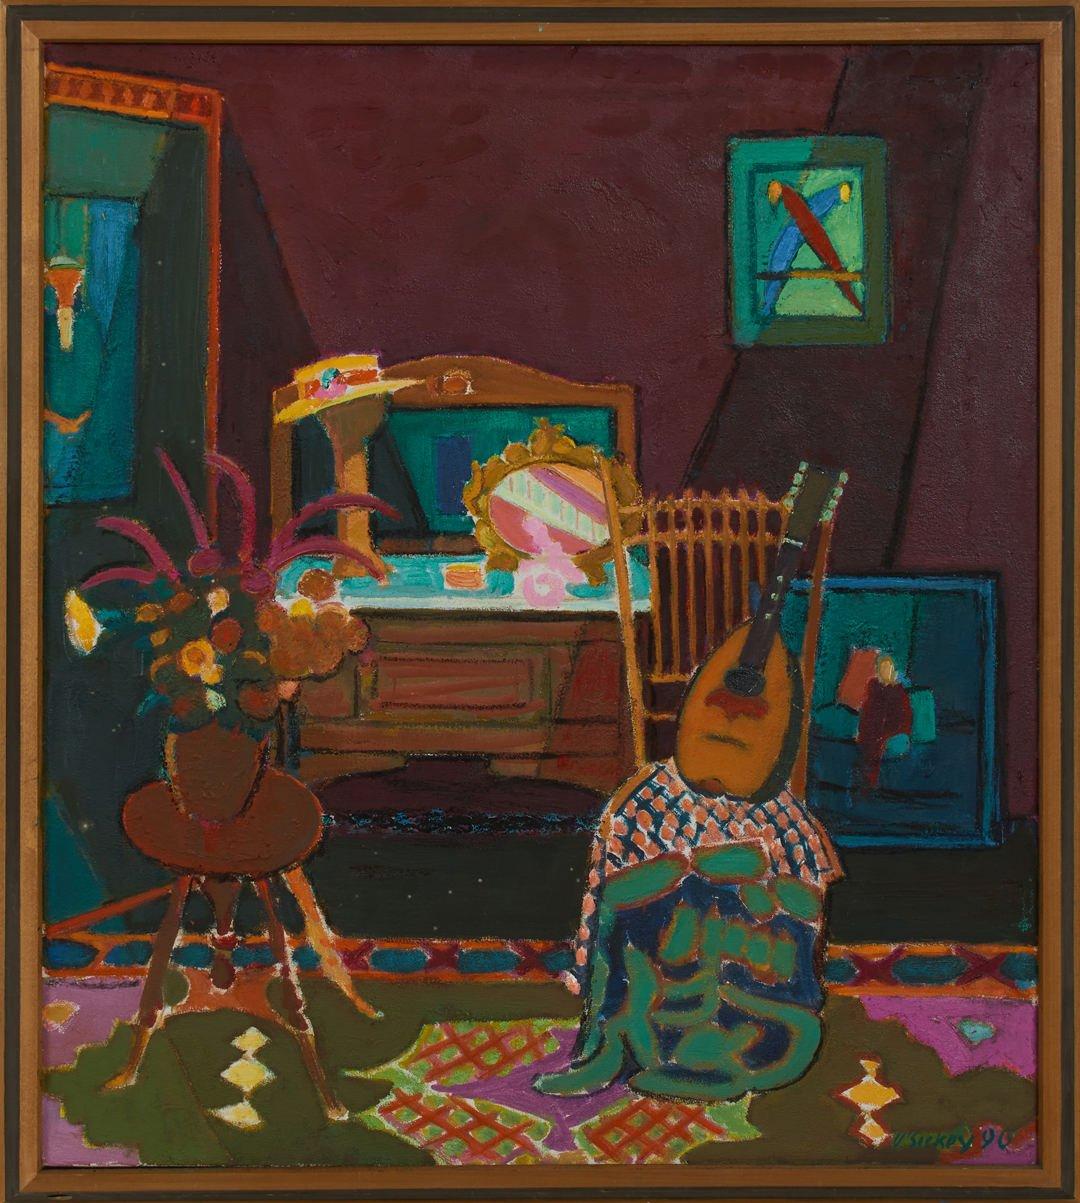 Interieur mit indischen Töpfen und Mandolin, Stillleben – Painting von Joseph O'Sickey